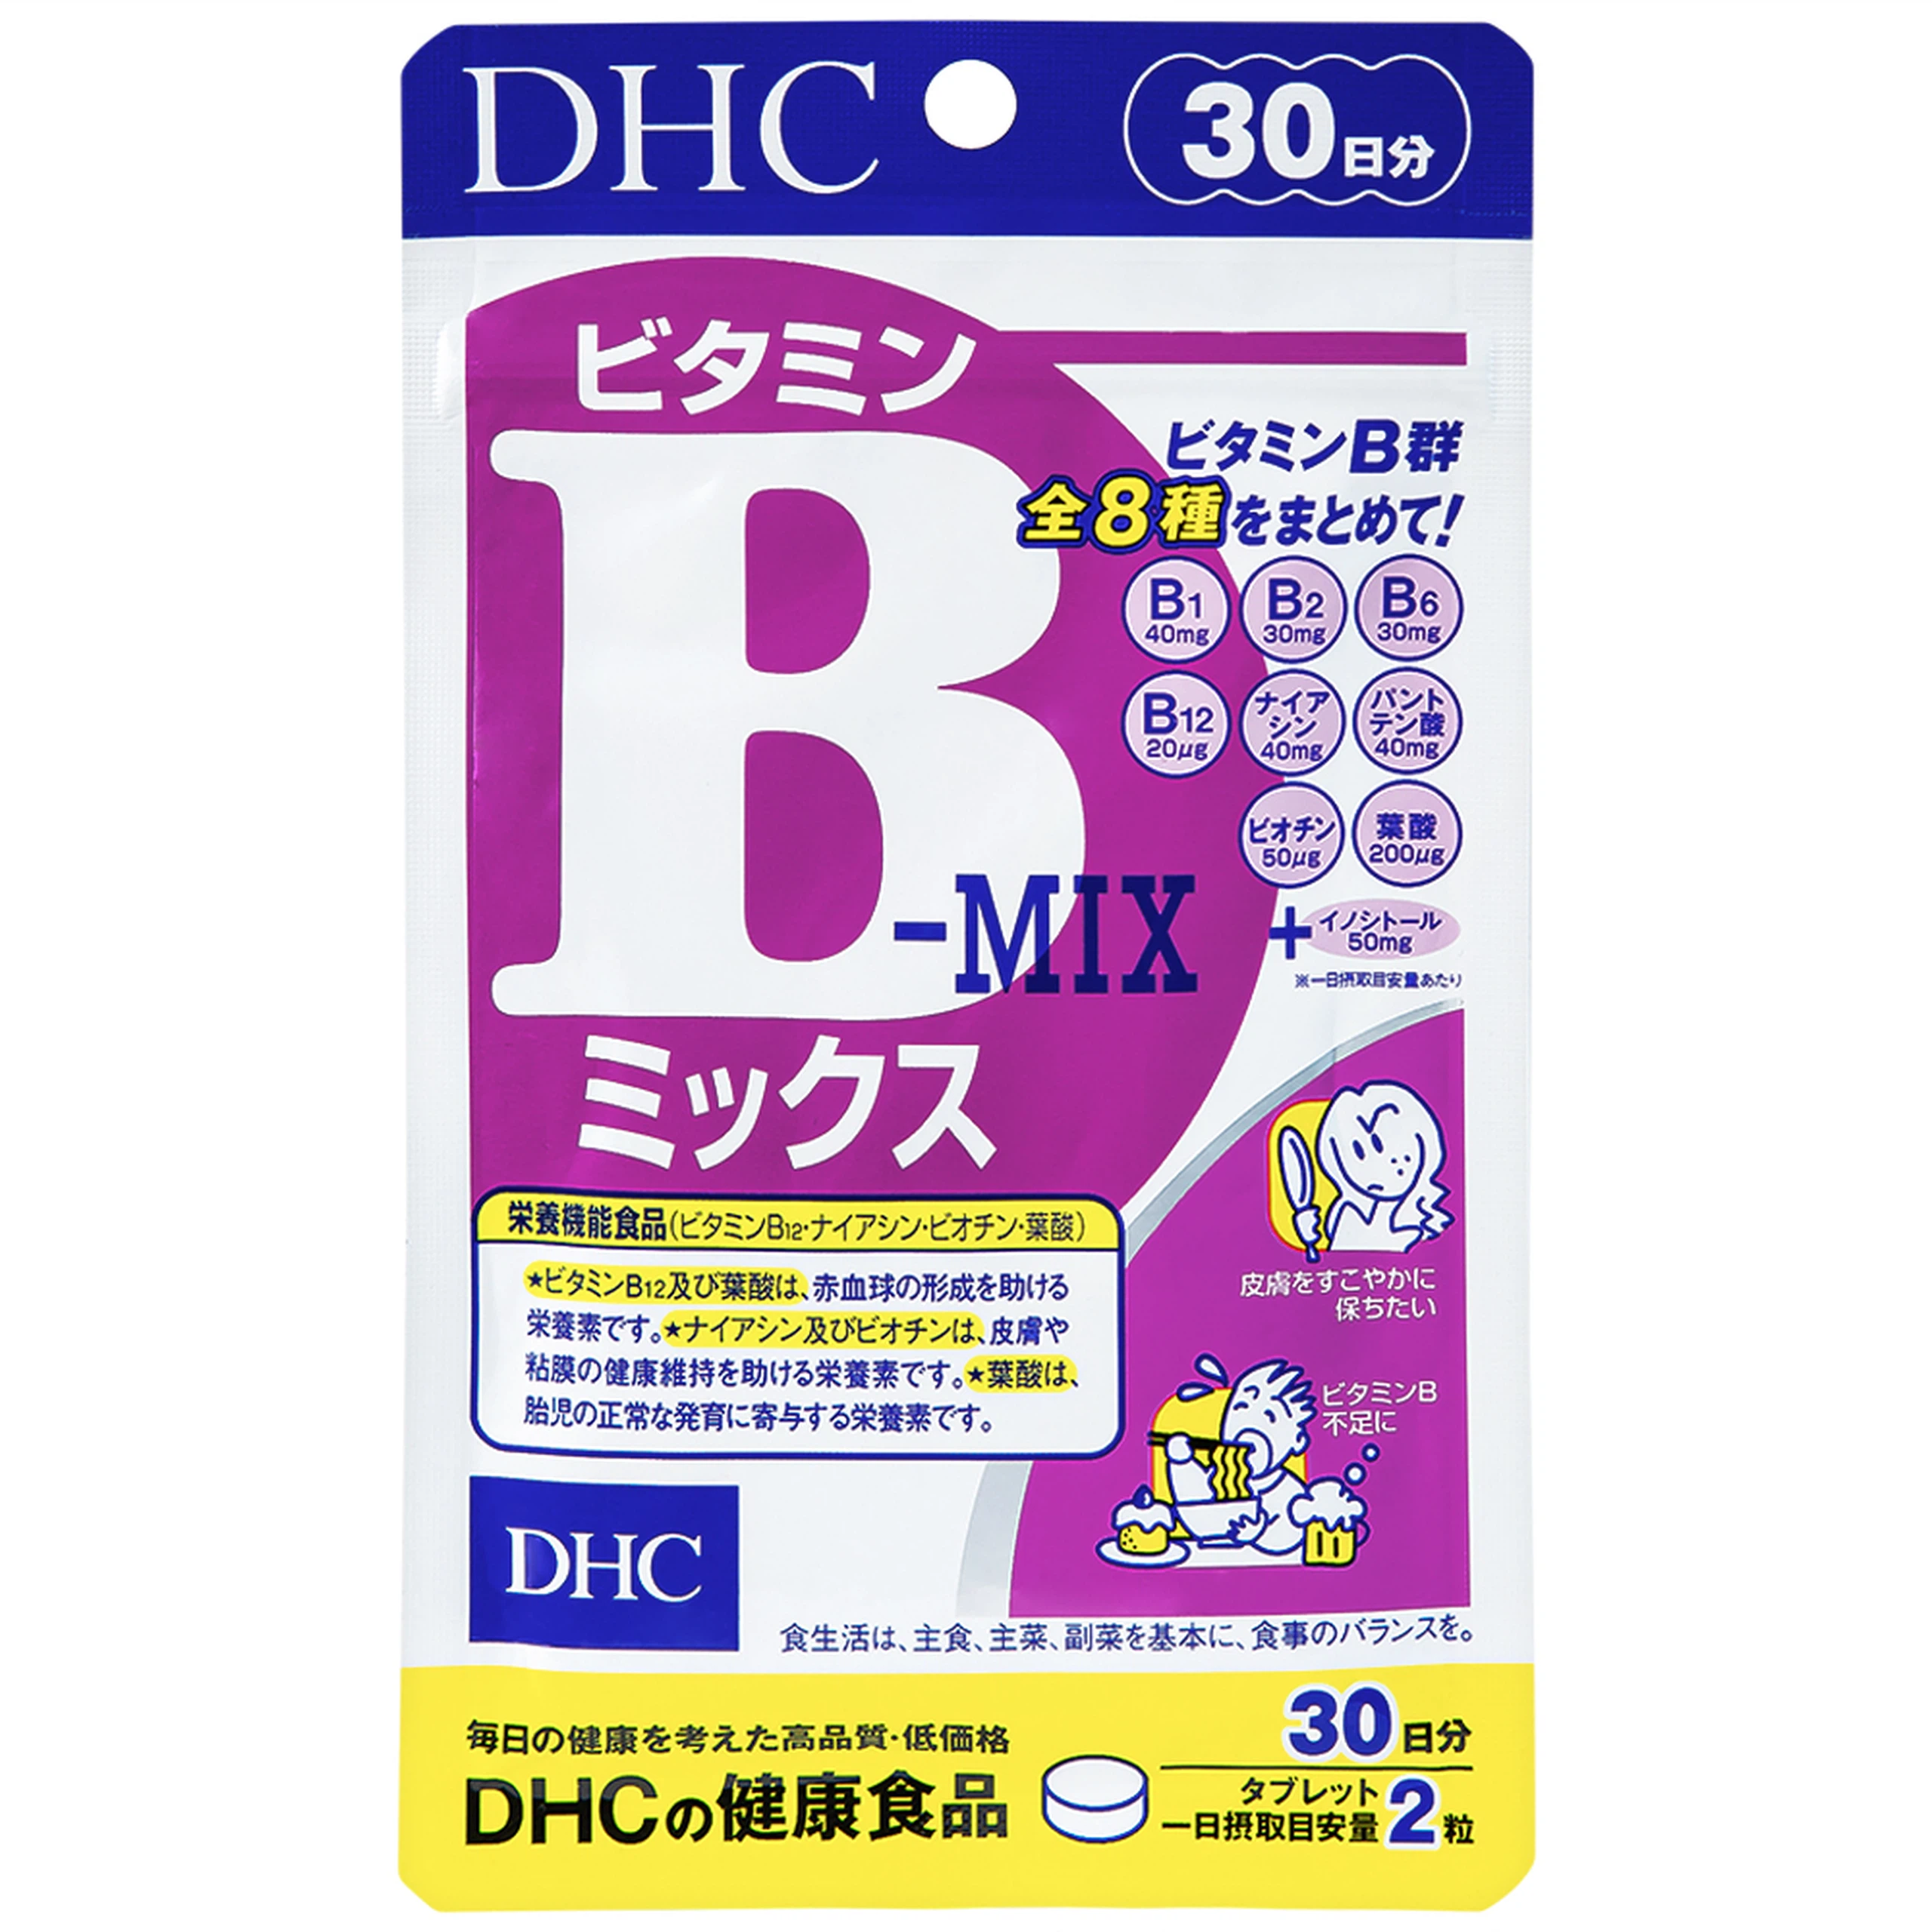 Viên uống DHC Vitamin B Mix bổ sung biotin, inositol, acid folic và một số vitamin nhóm B (60 viên)